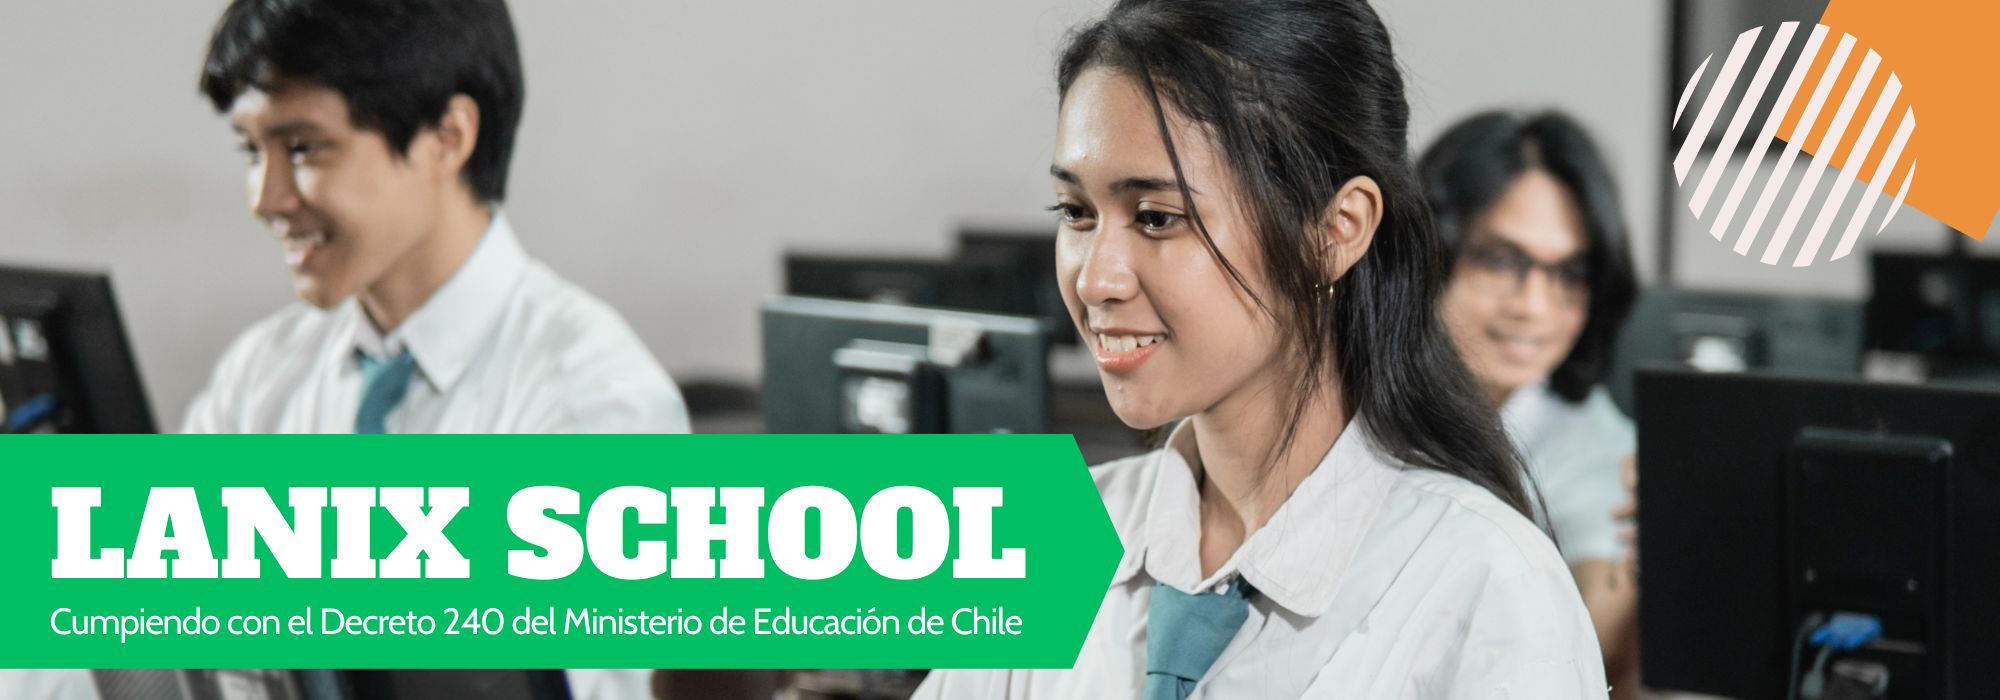 Lanix school, cumpliendo con el decreto 240 del ministerio de educación chile